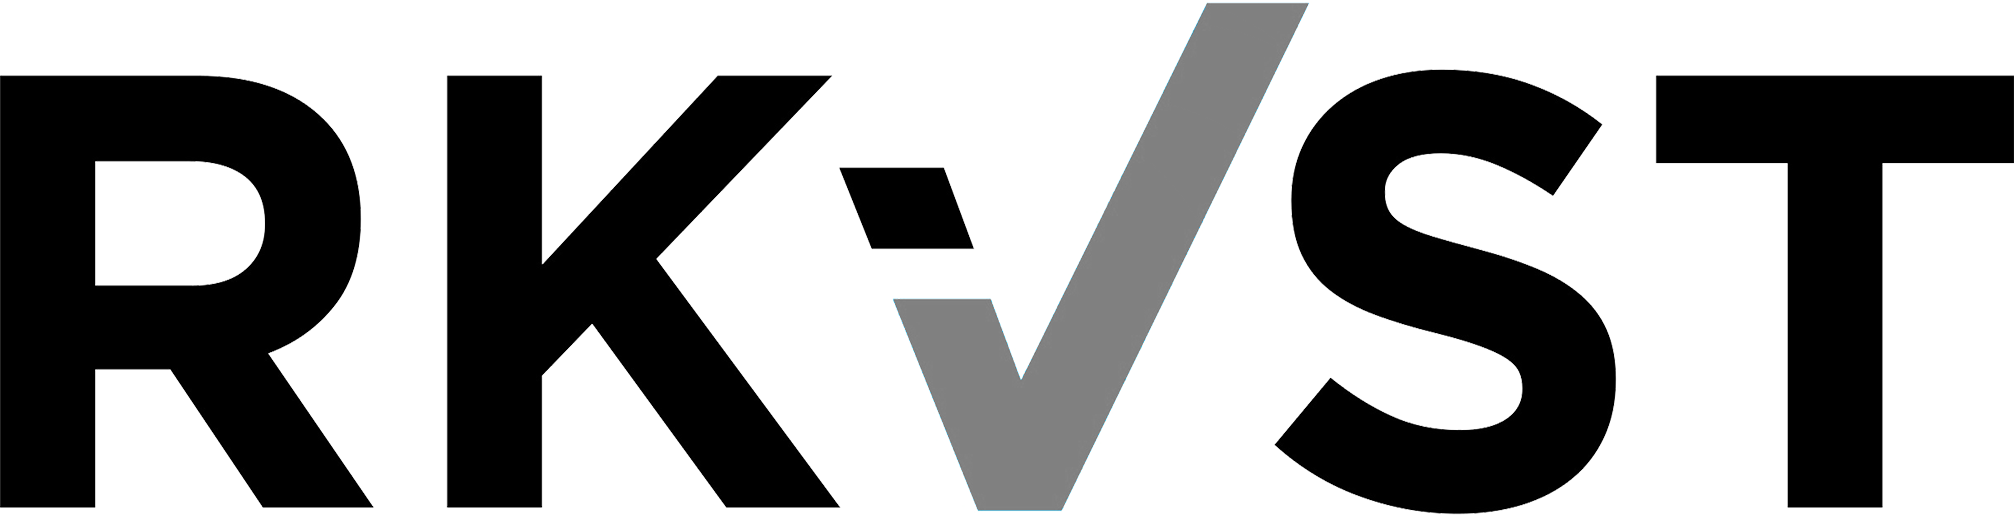 RKVST logo